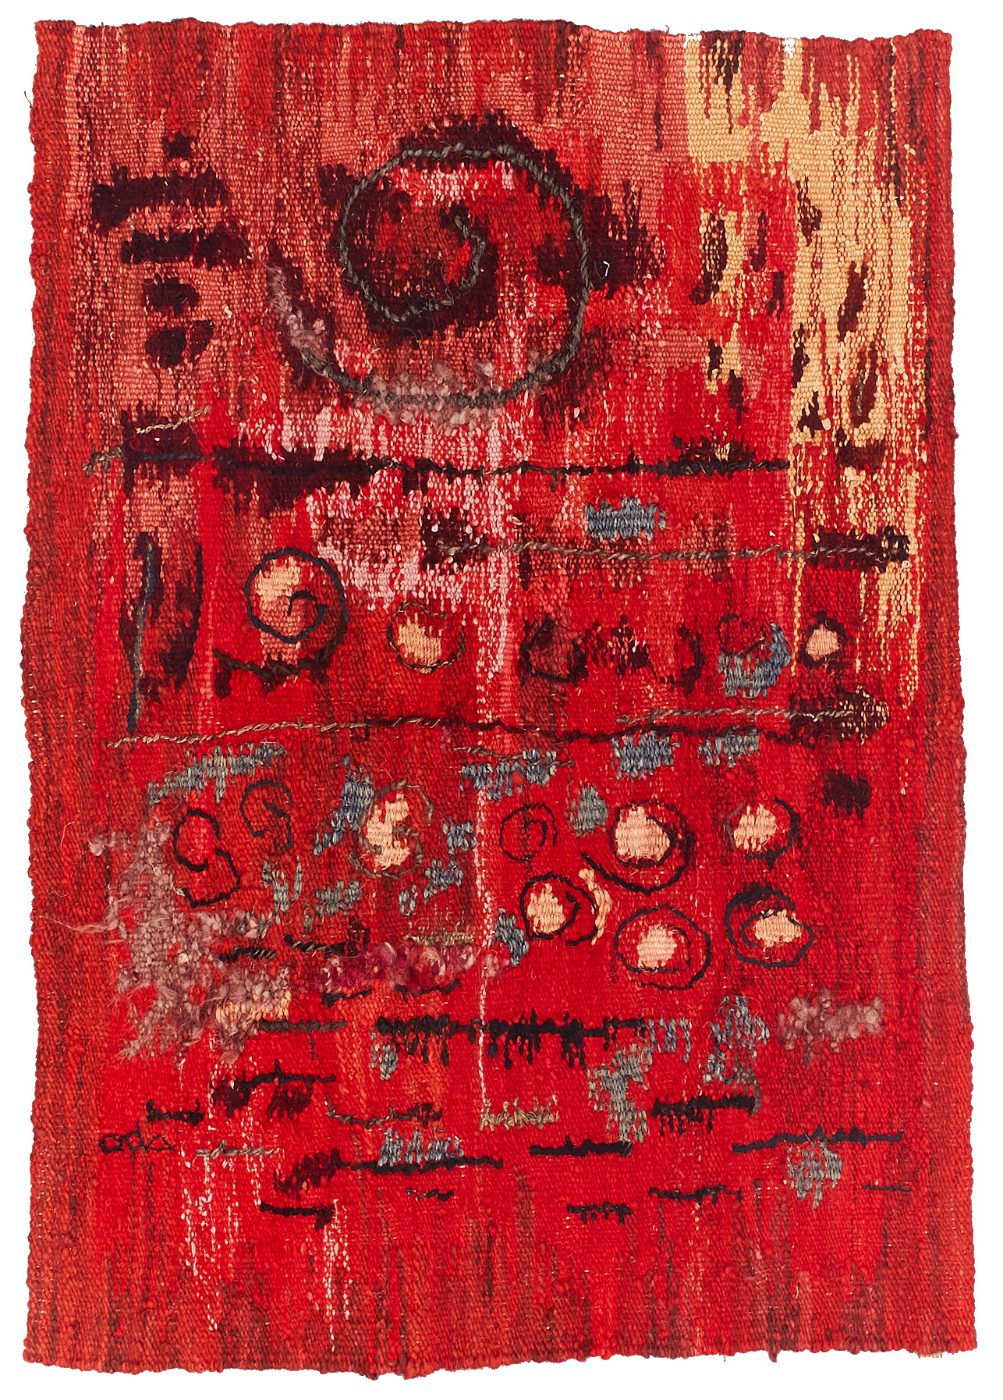 Ada Kierzkowska, Kompozycja z czerwieniami, ok. 1965, gobelin, 115 x 83 cm. Kolekcja prywatna. Dzięki uprzejmości Fundacji Art & Modern